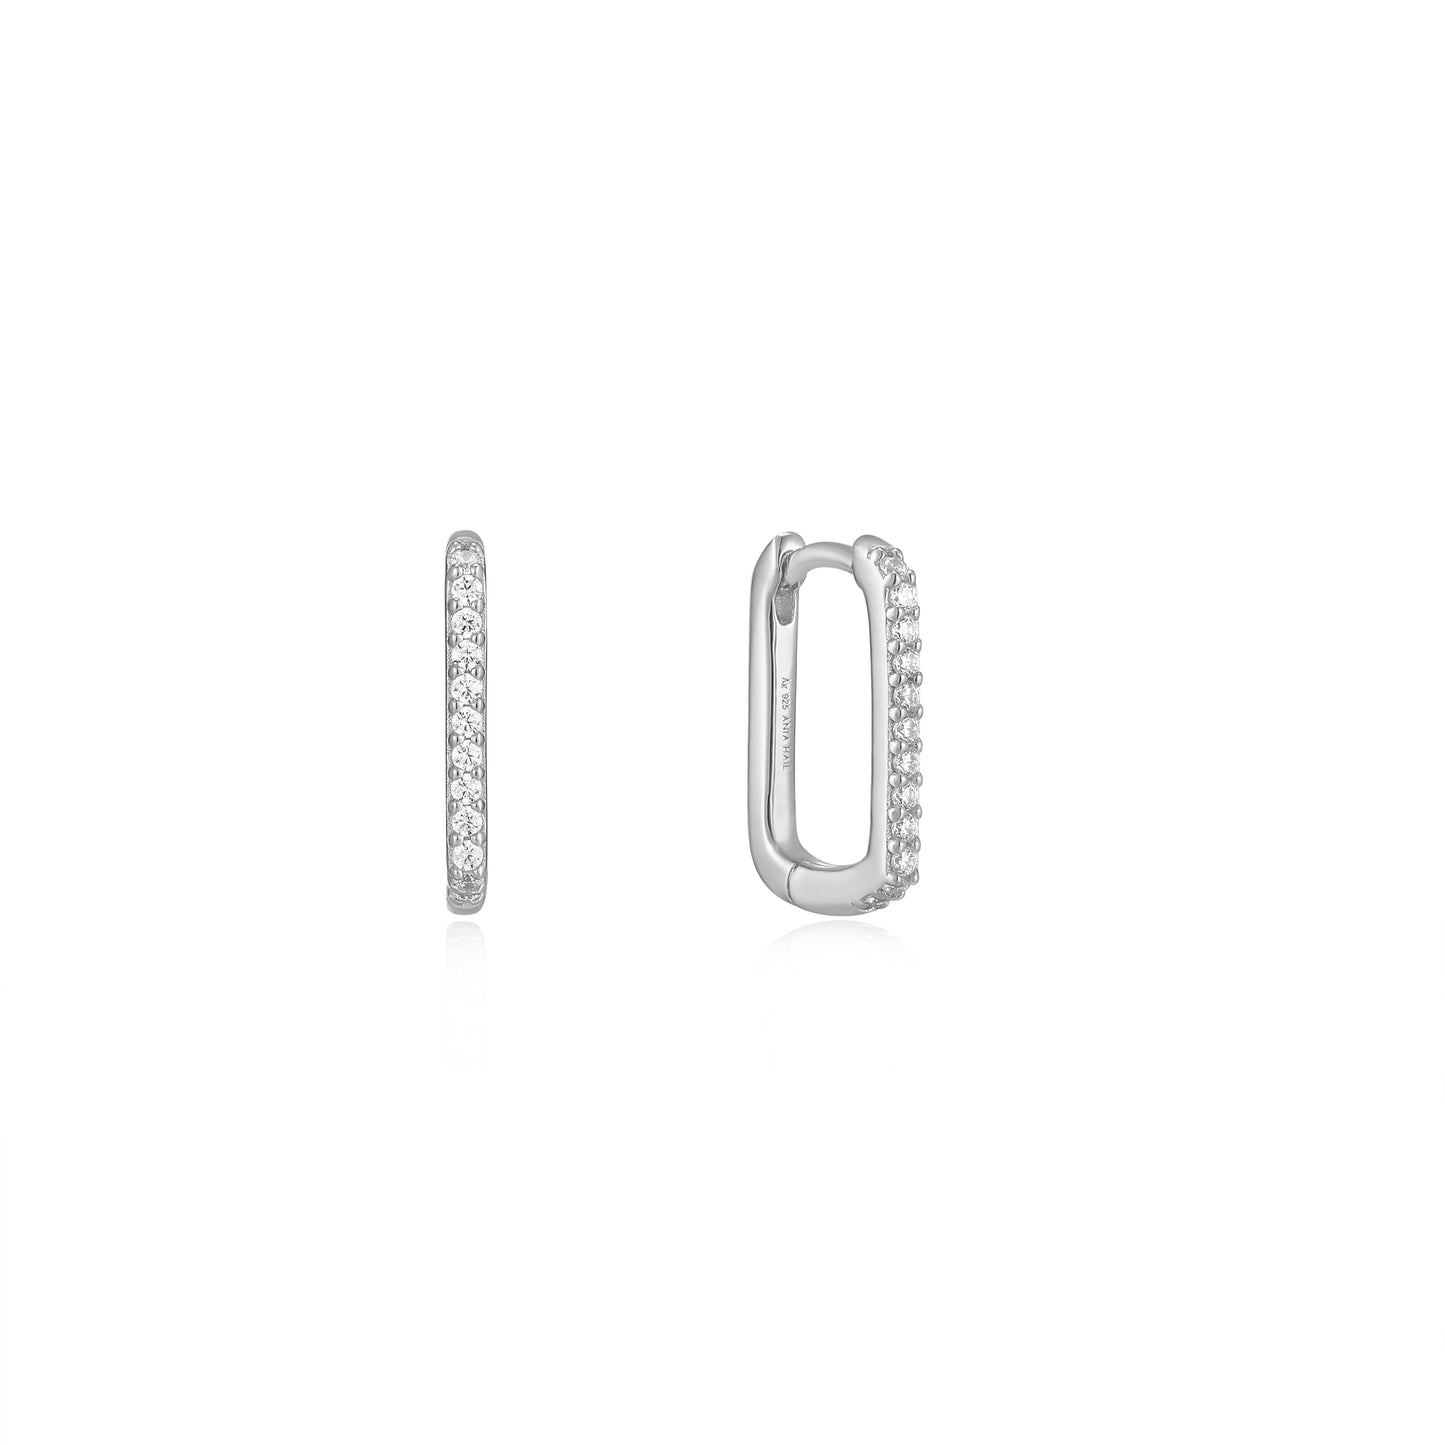 Ania Haie Glam Oval Hoop Earrings - Silver Earrings